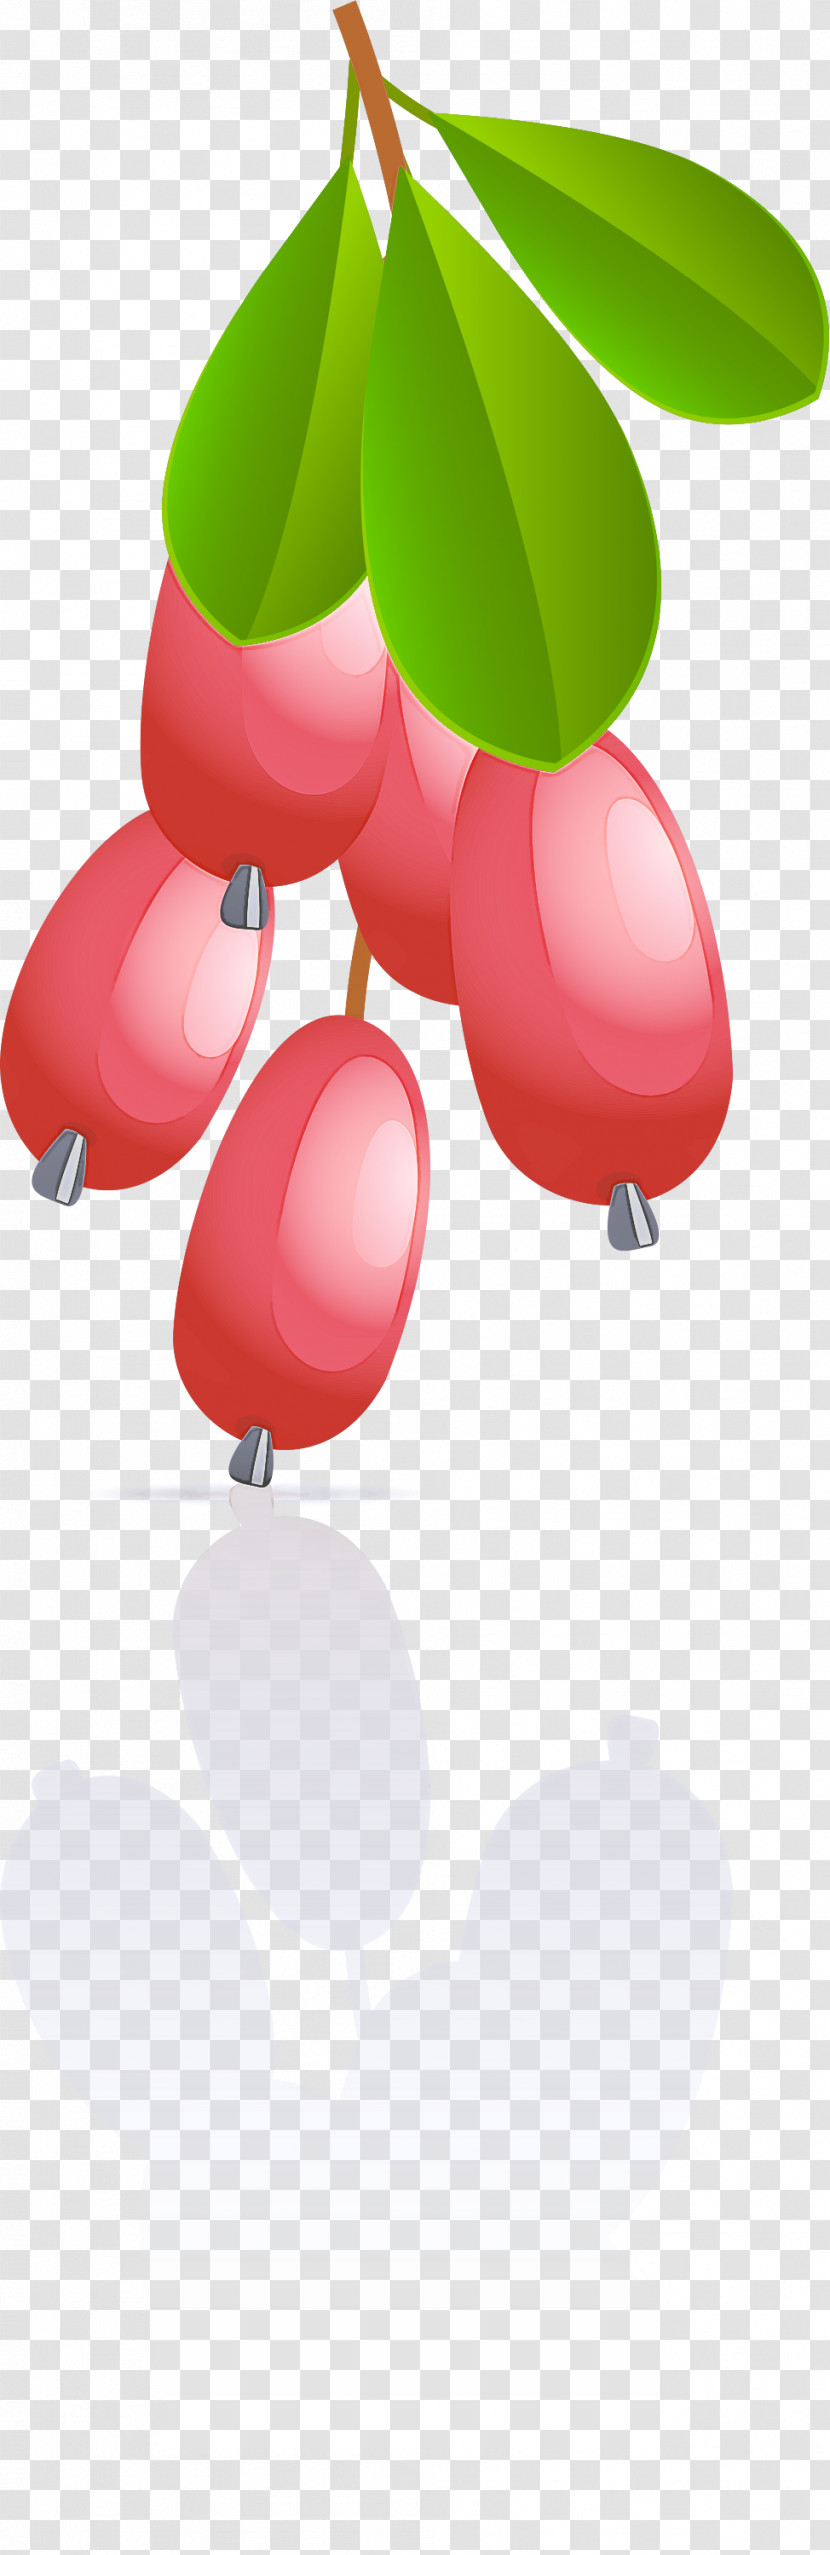 Pink Cartoon Balloon Plant Fruit Transparent PNG